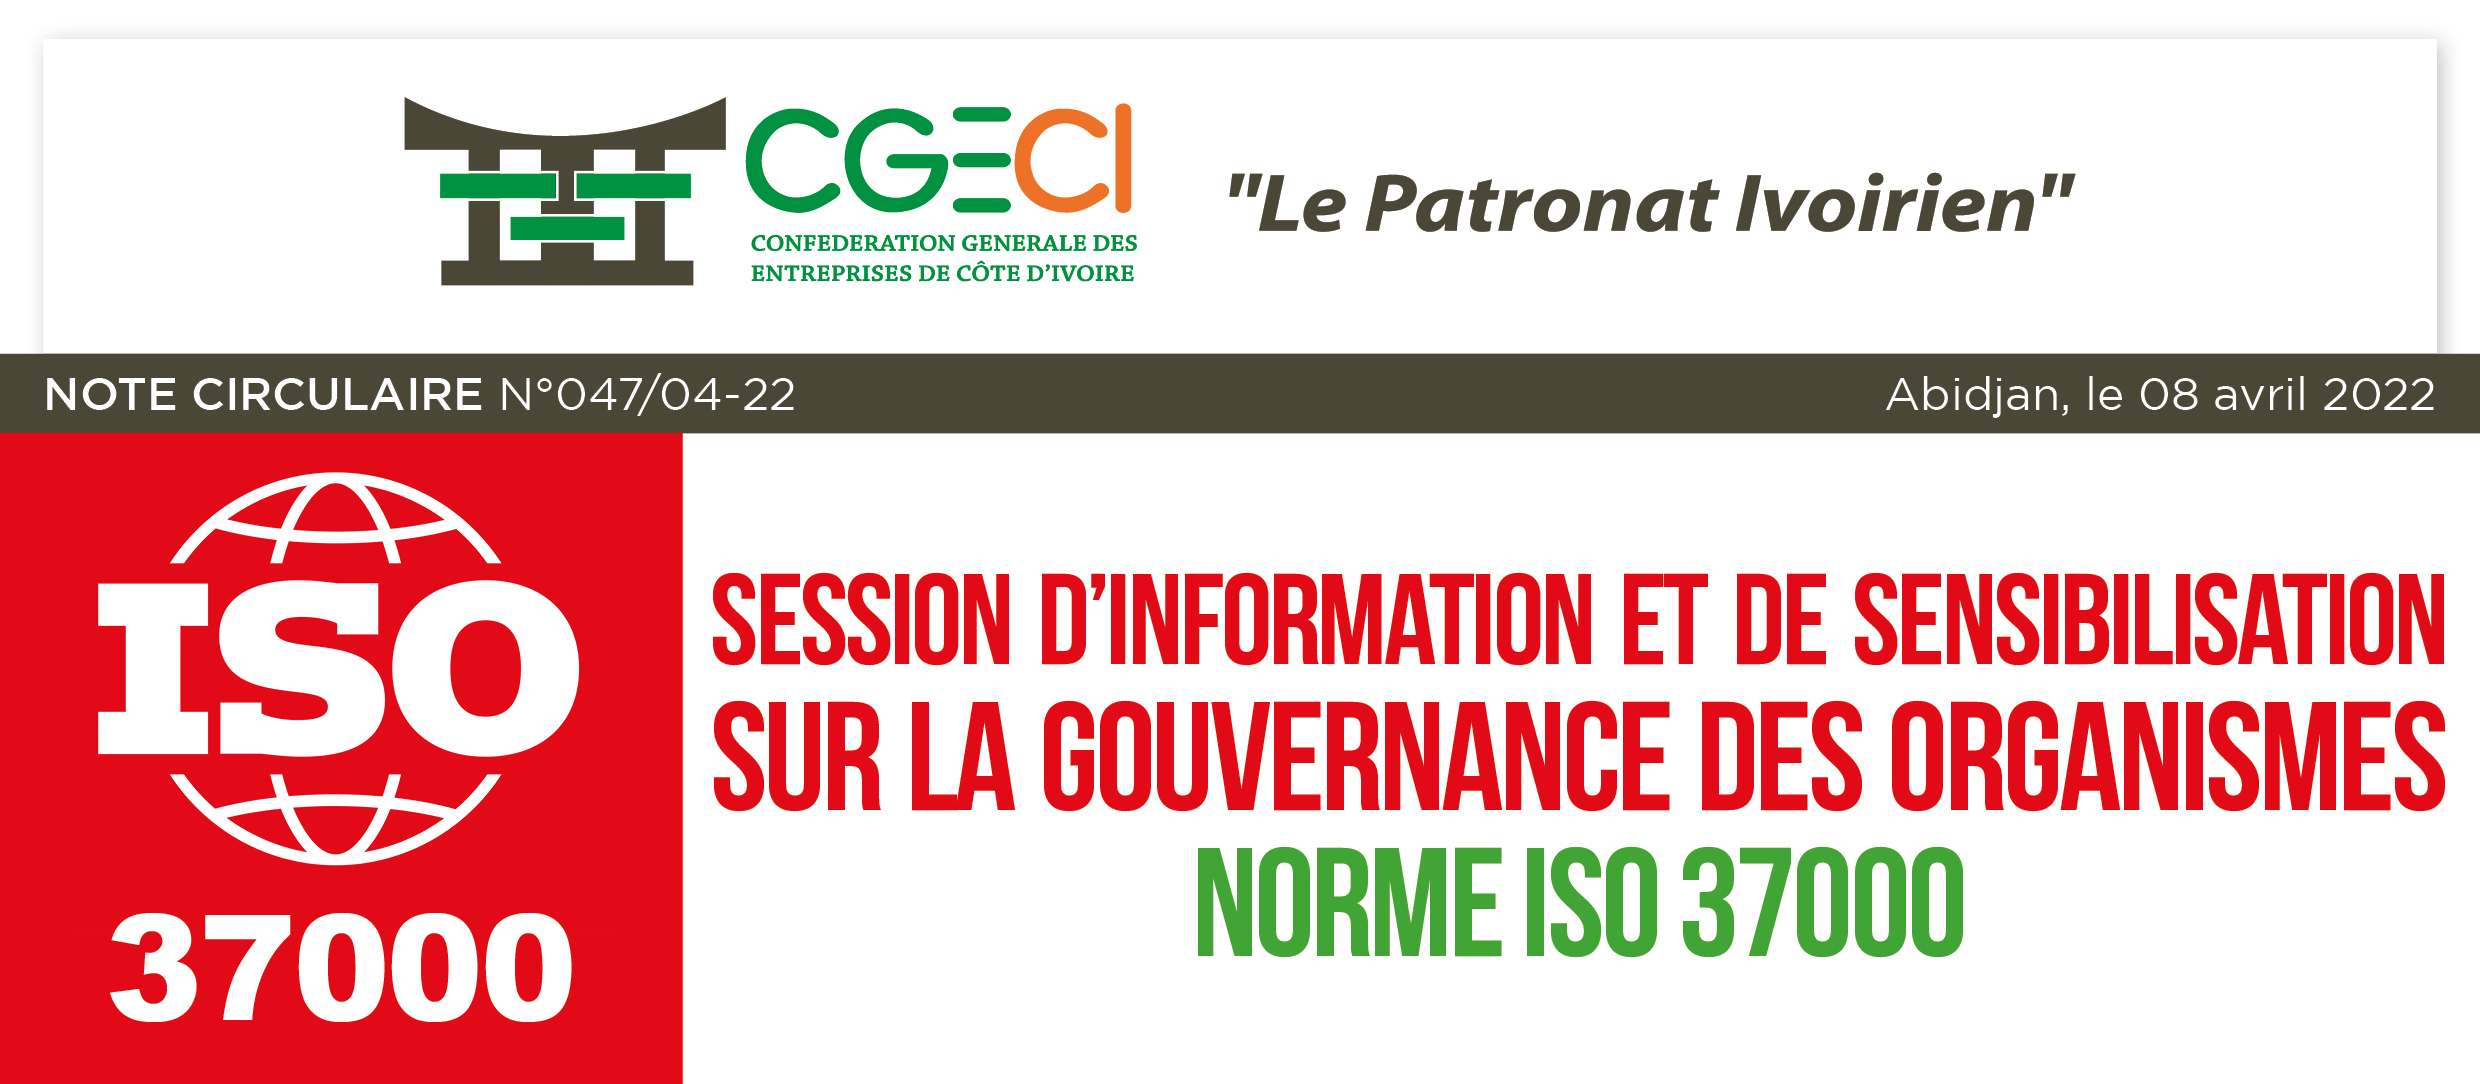 Session d’information et de sensibilisation sur la Gouvernance des Organismes/norme ISO 37000